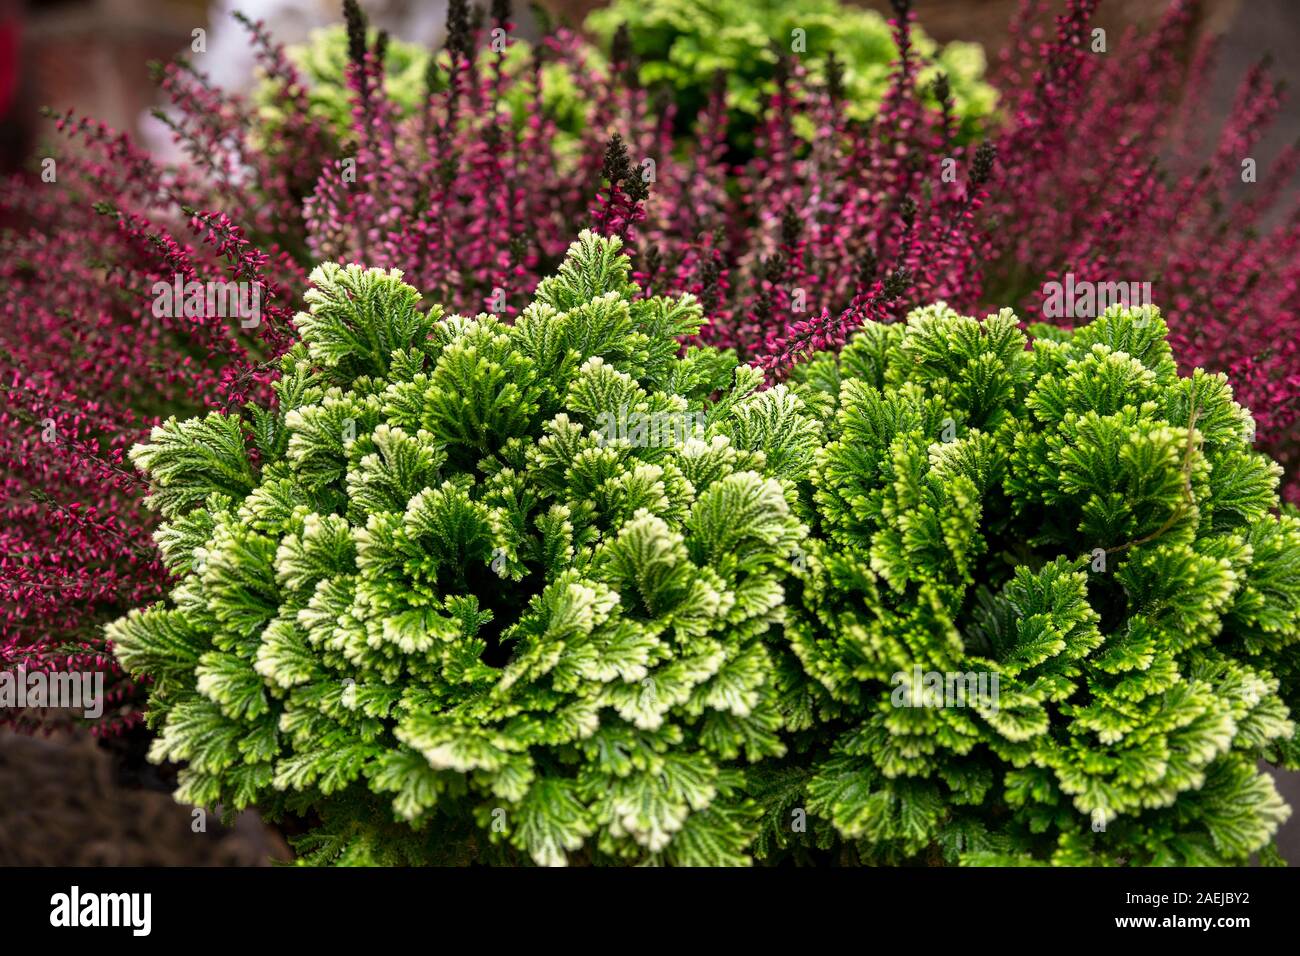 Gros plan du quartier animé de plantes vertes sur fond violet Banque D'Images